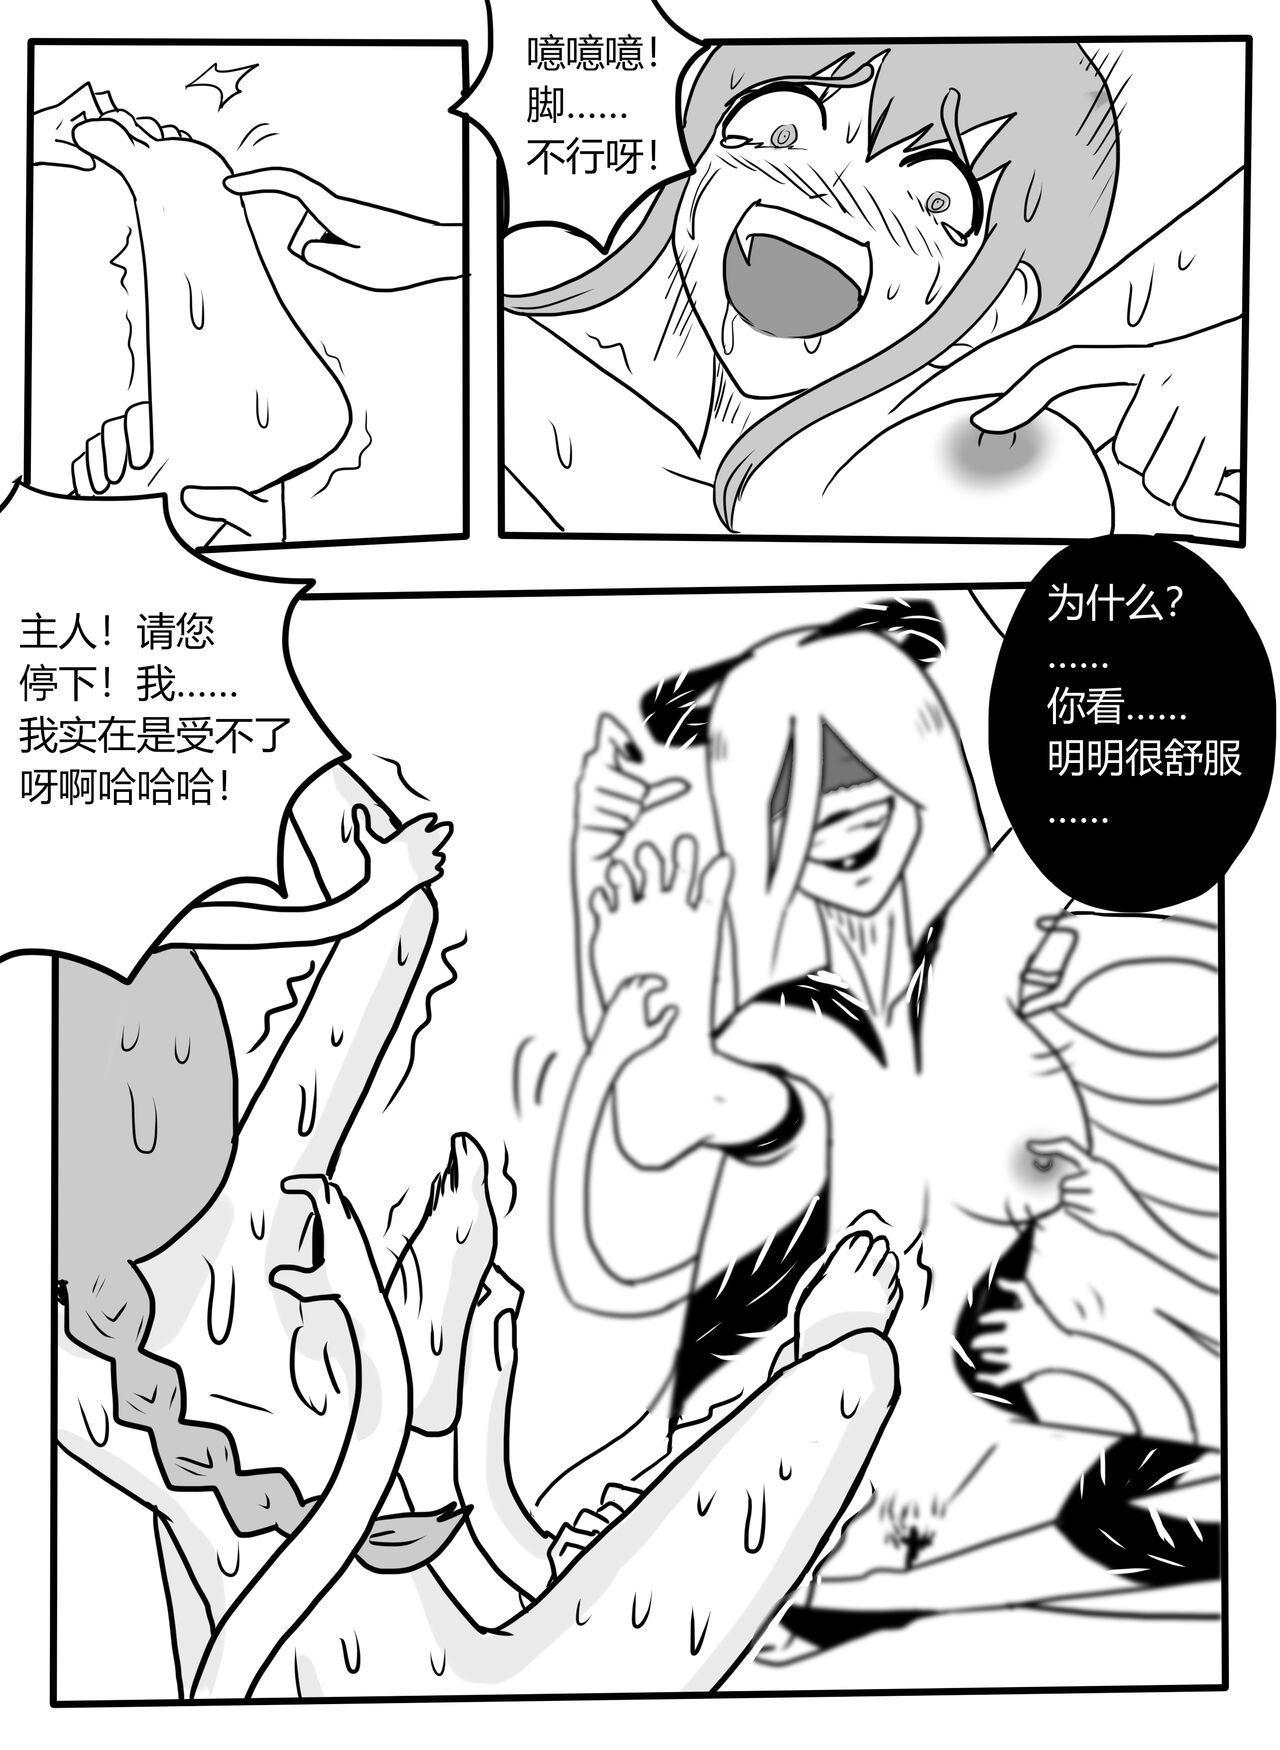 Hot Girls Fucking Makima tk manga - Chainsaw man Clitoris - Page 11